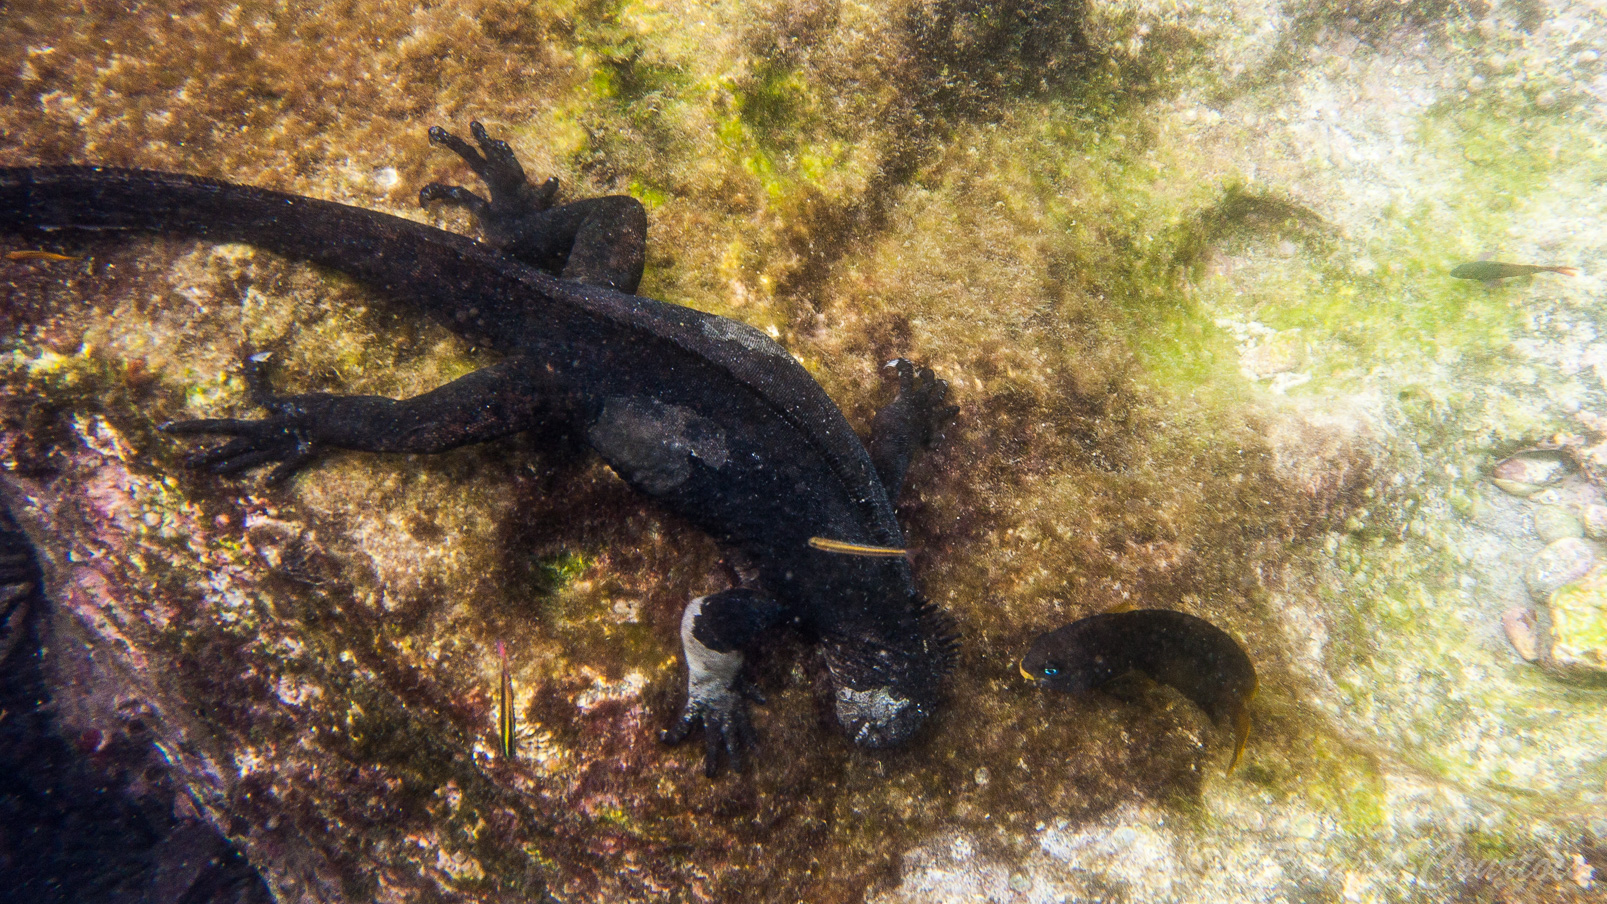 Iguane marin qui se nourrit des algues.